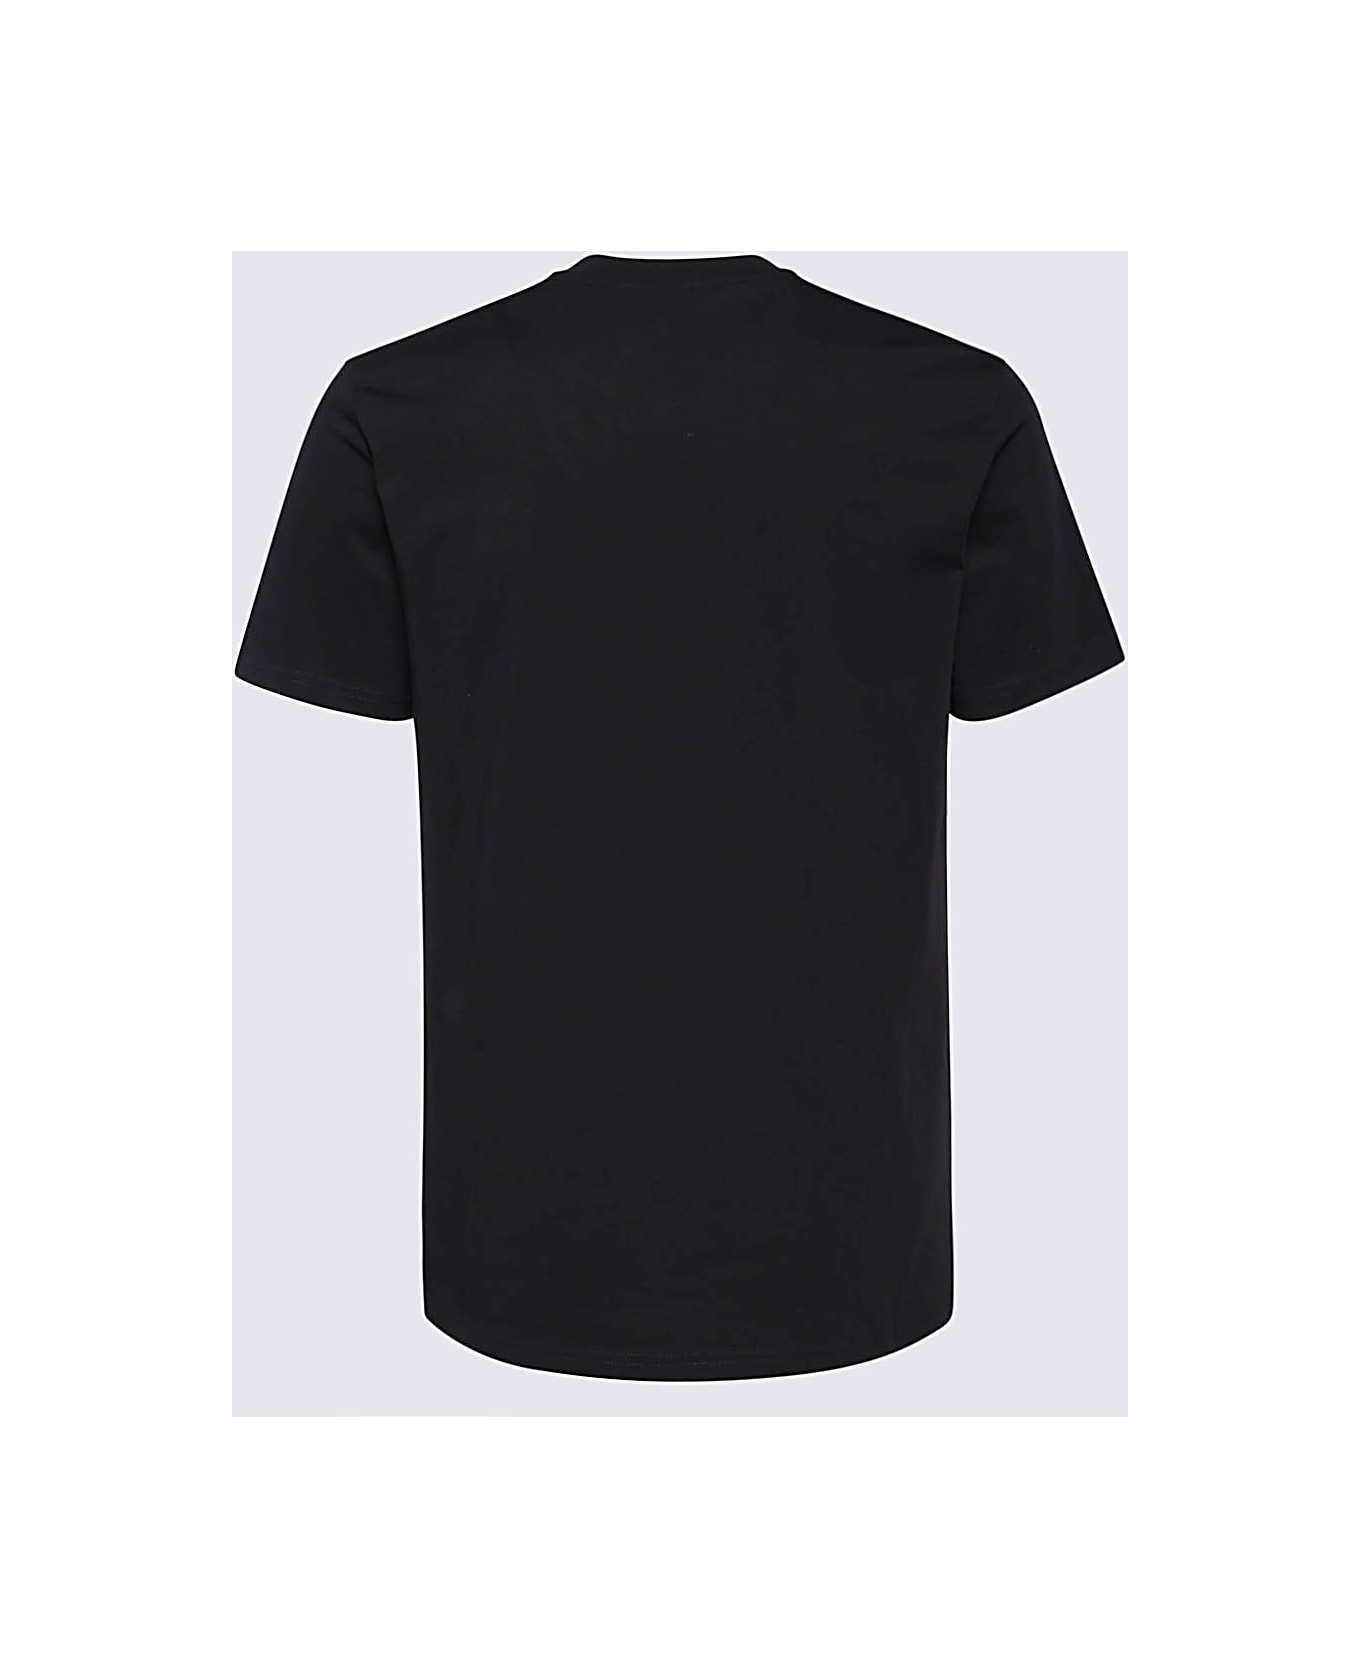 Moschino Black Cotton T-shirt - Nero